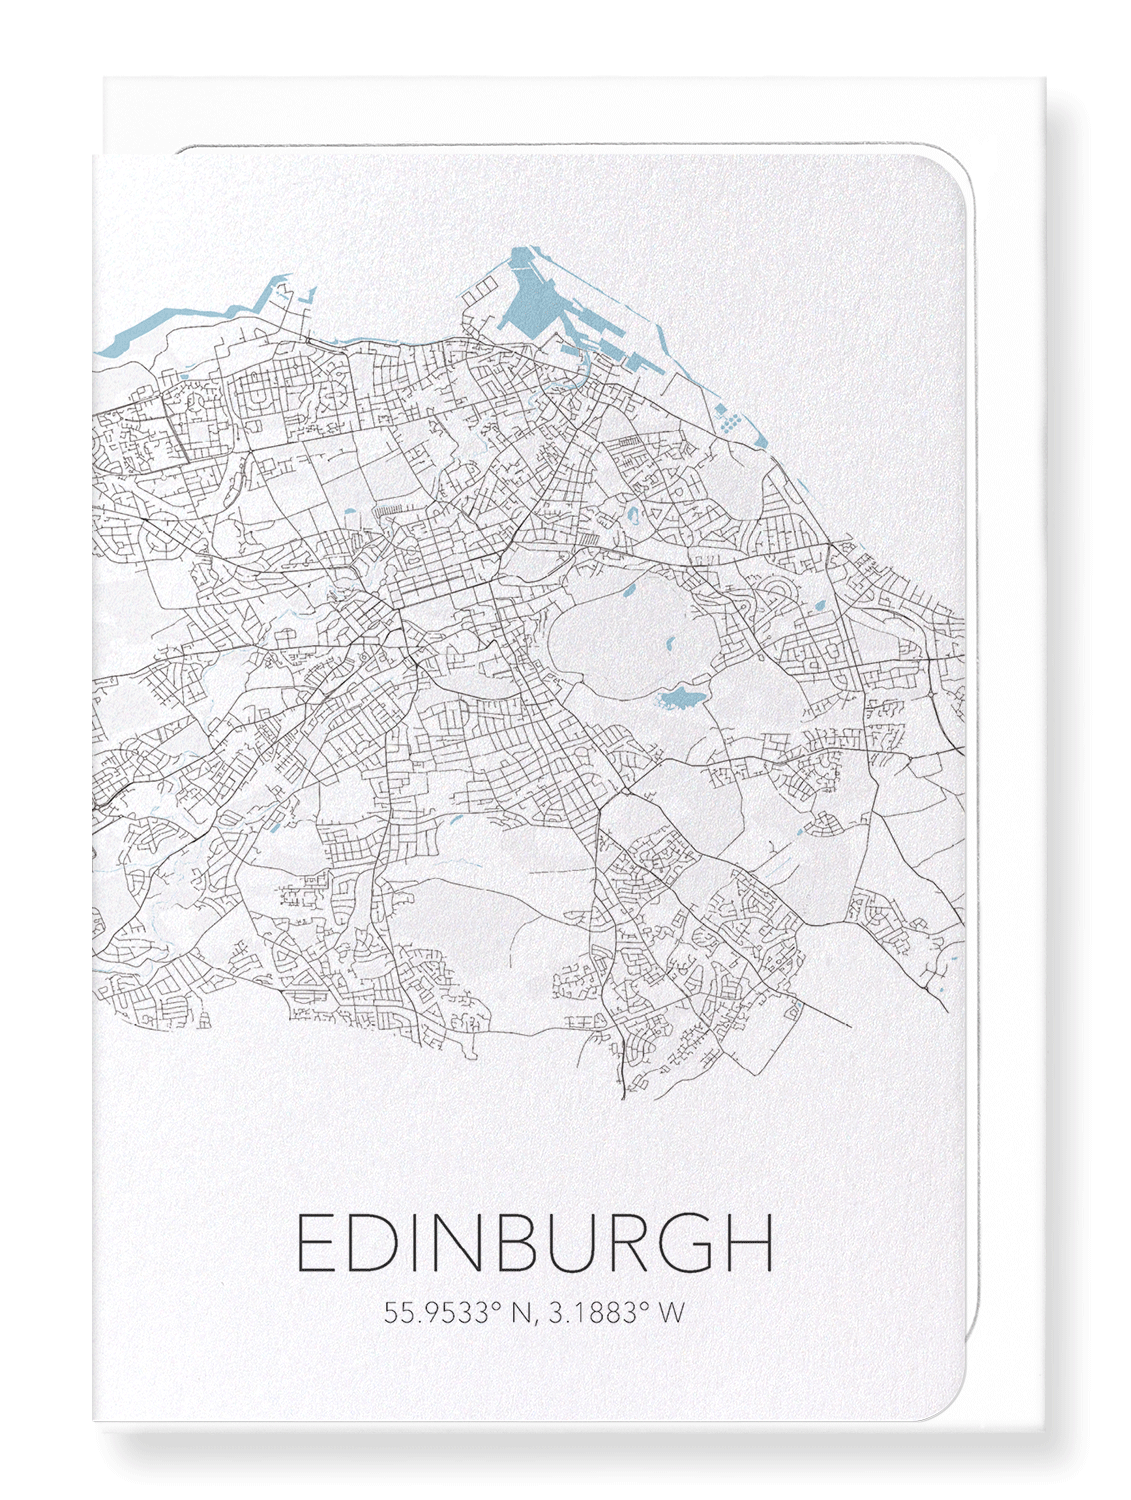 EDINBURGH CUTOUT: Map Cutout Greeting Card